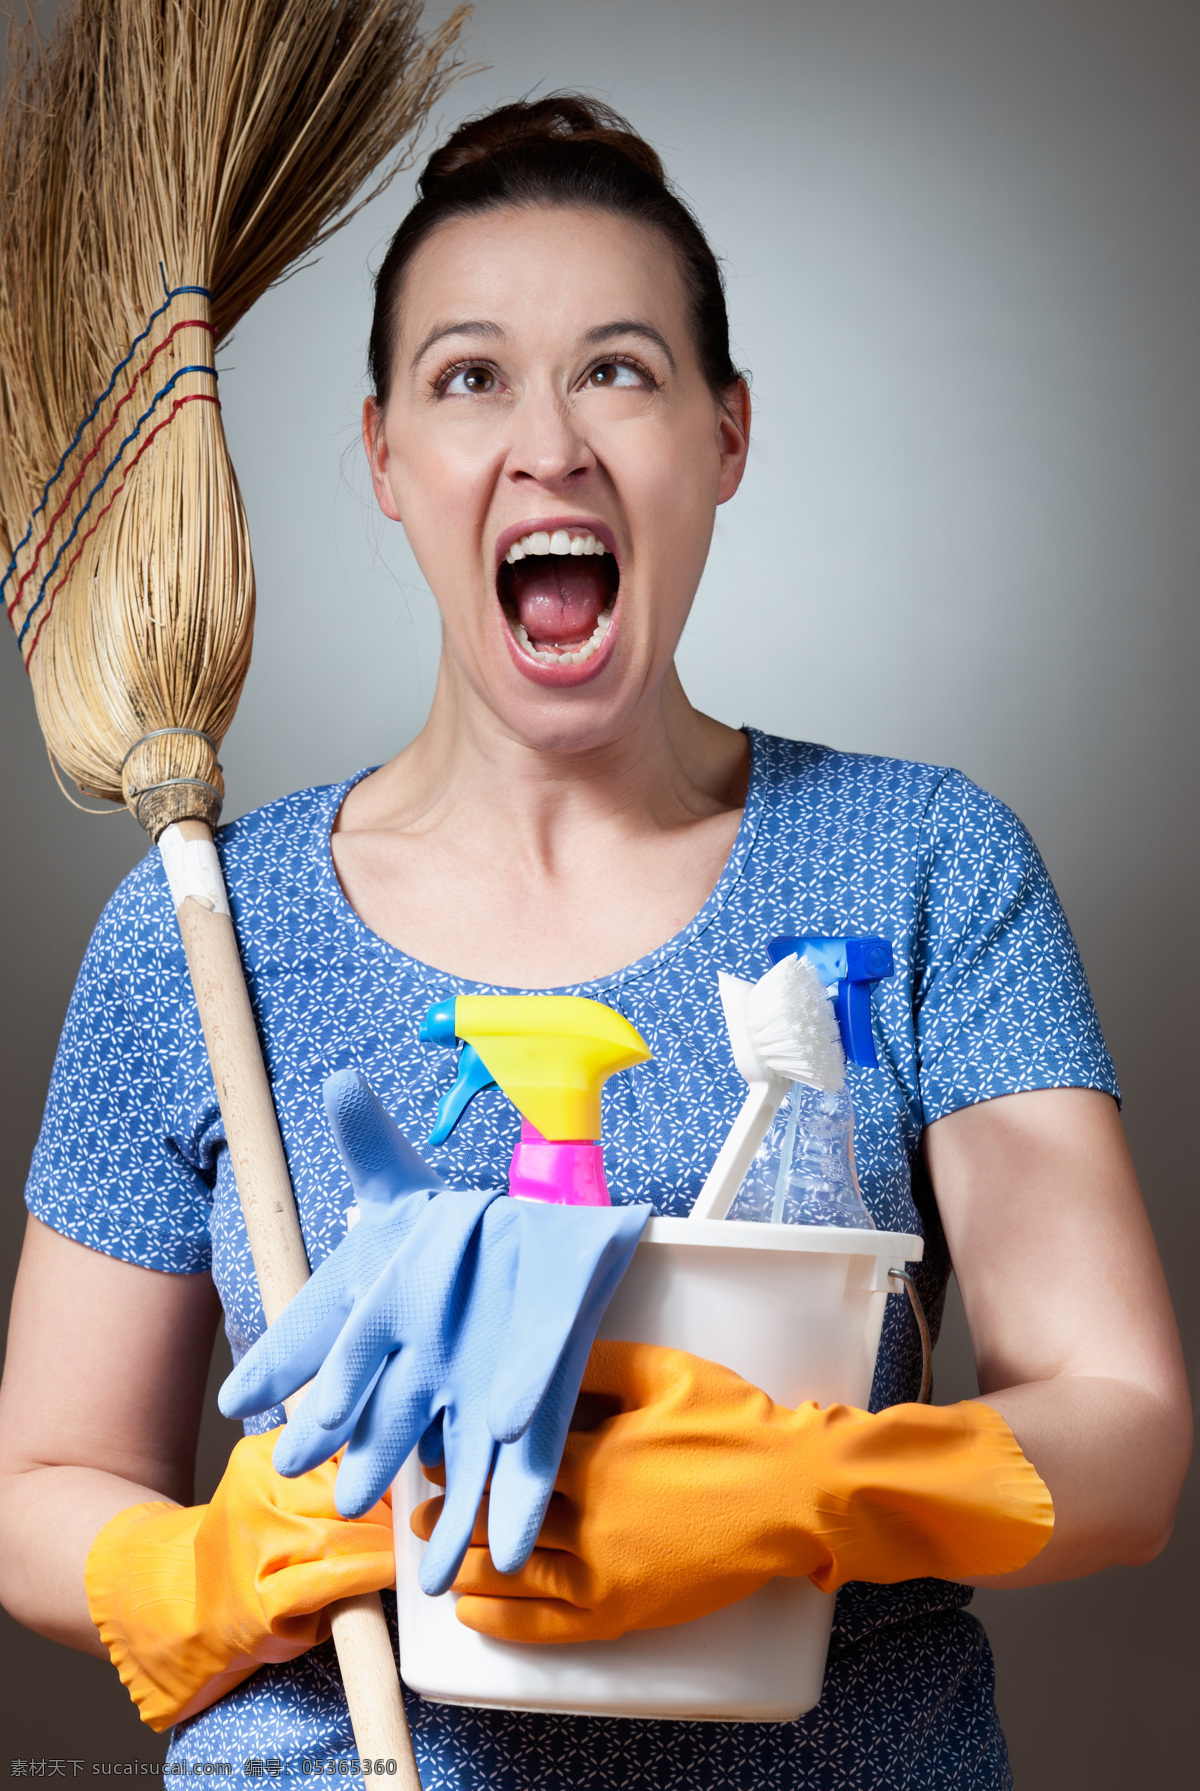 手 扫帚 家庭 主妇 外国女性 女人 家庭主妇 性感美女 妇女 打扫清洁 水桶 手套 美女图片 人物图片